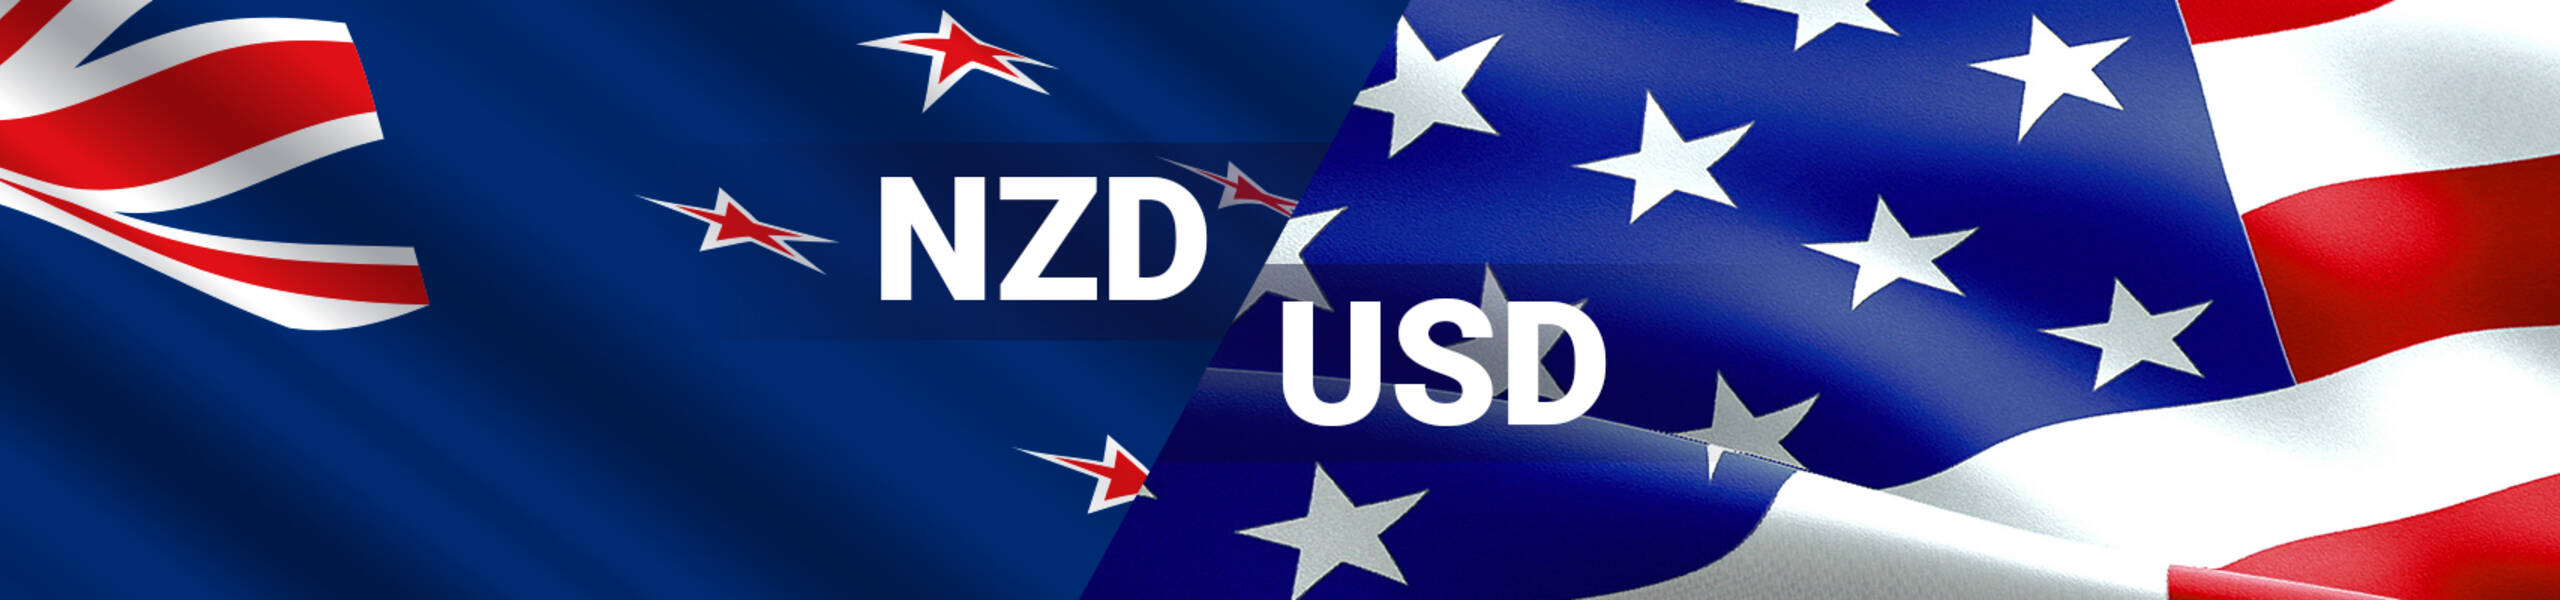 NZD/USD el par con mejor desempeño en medio de la volatilidad del mercado